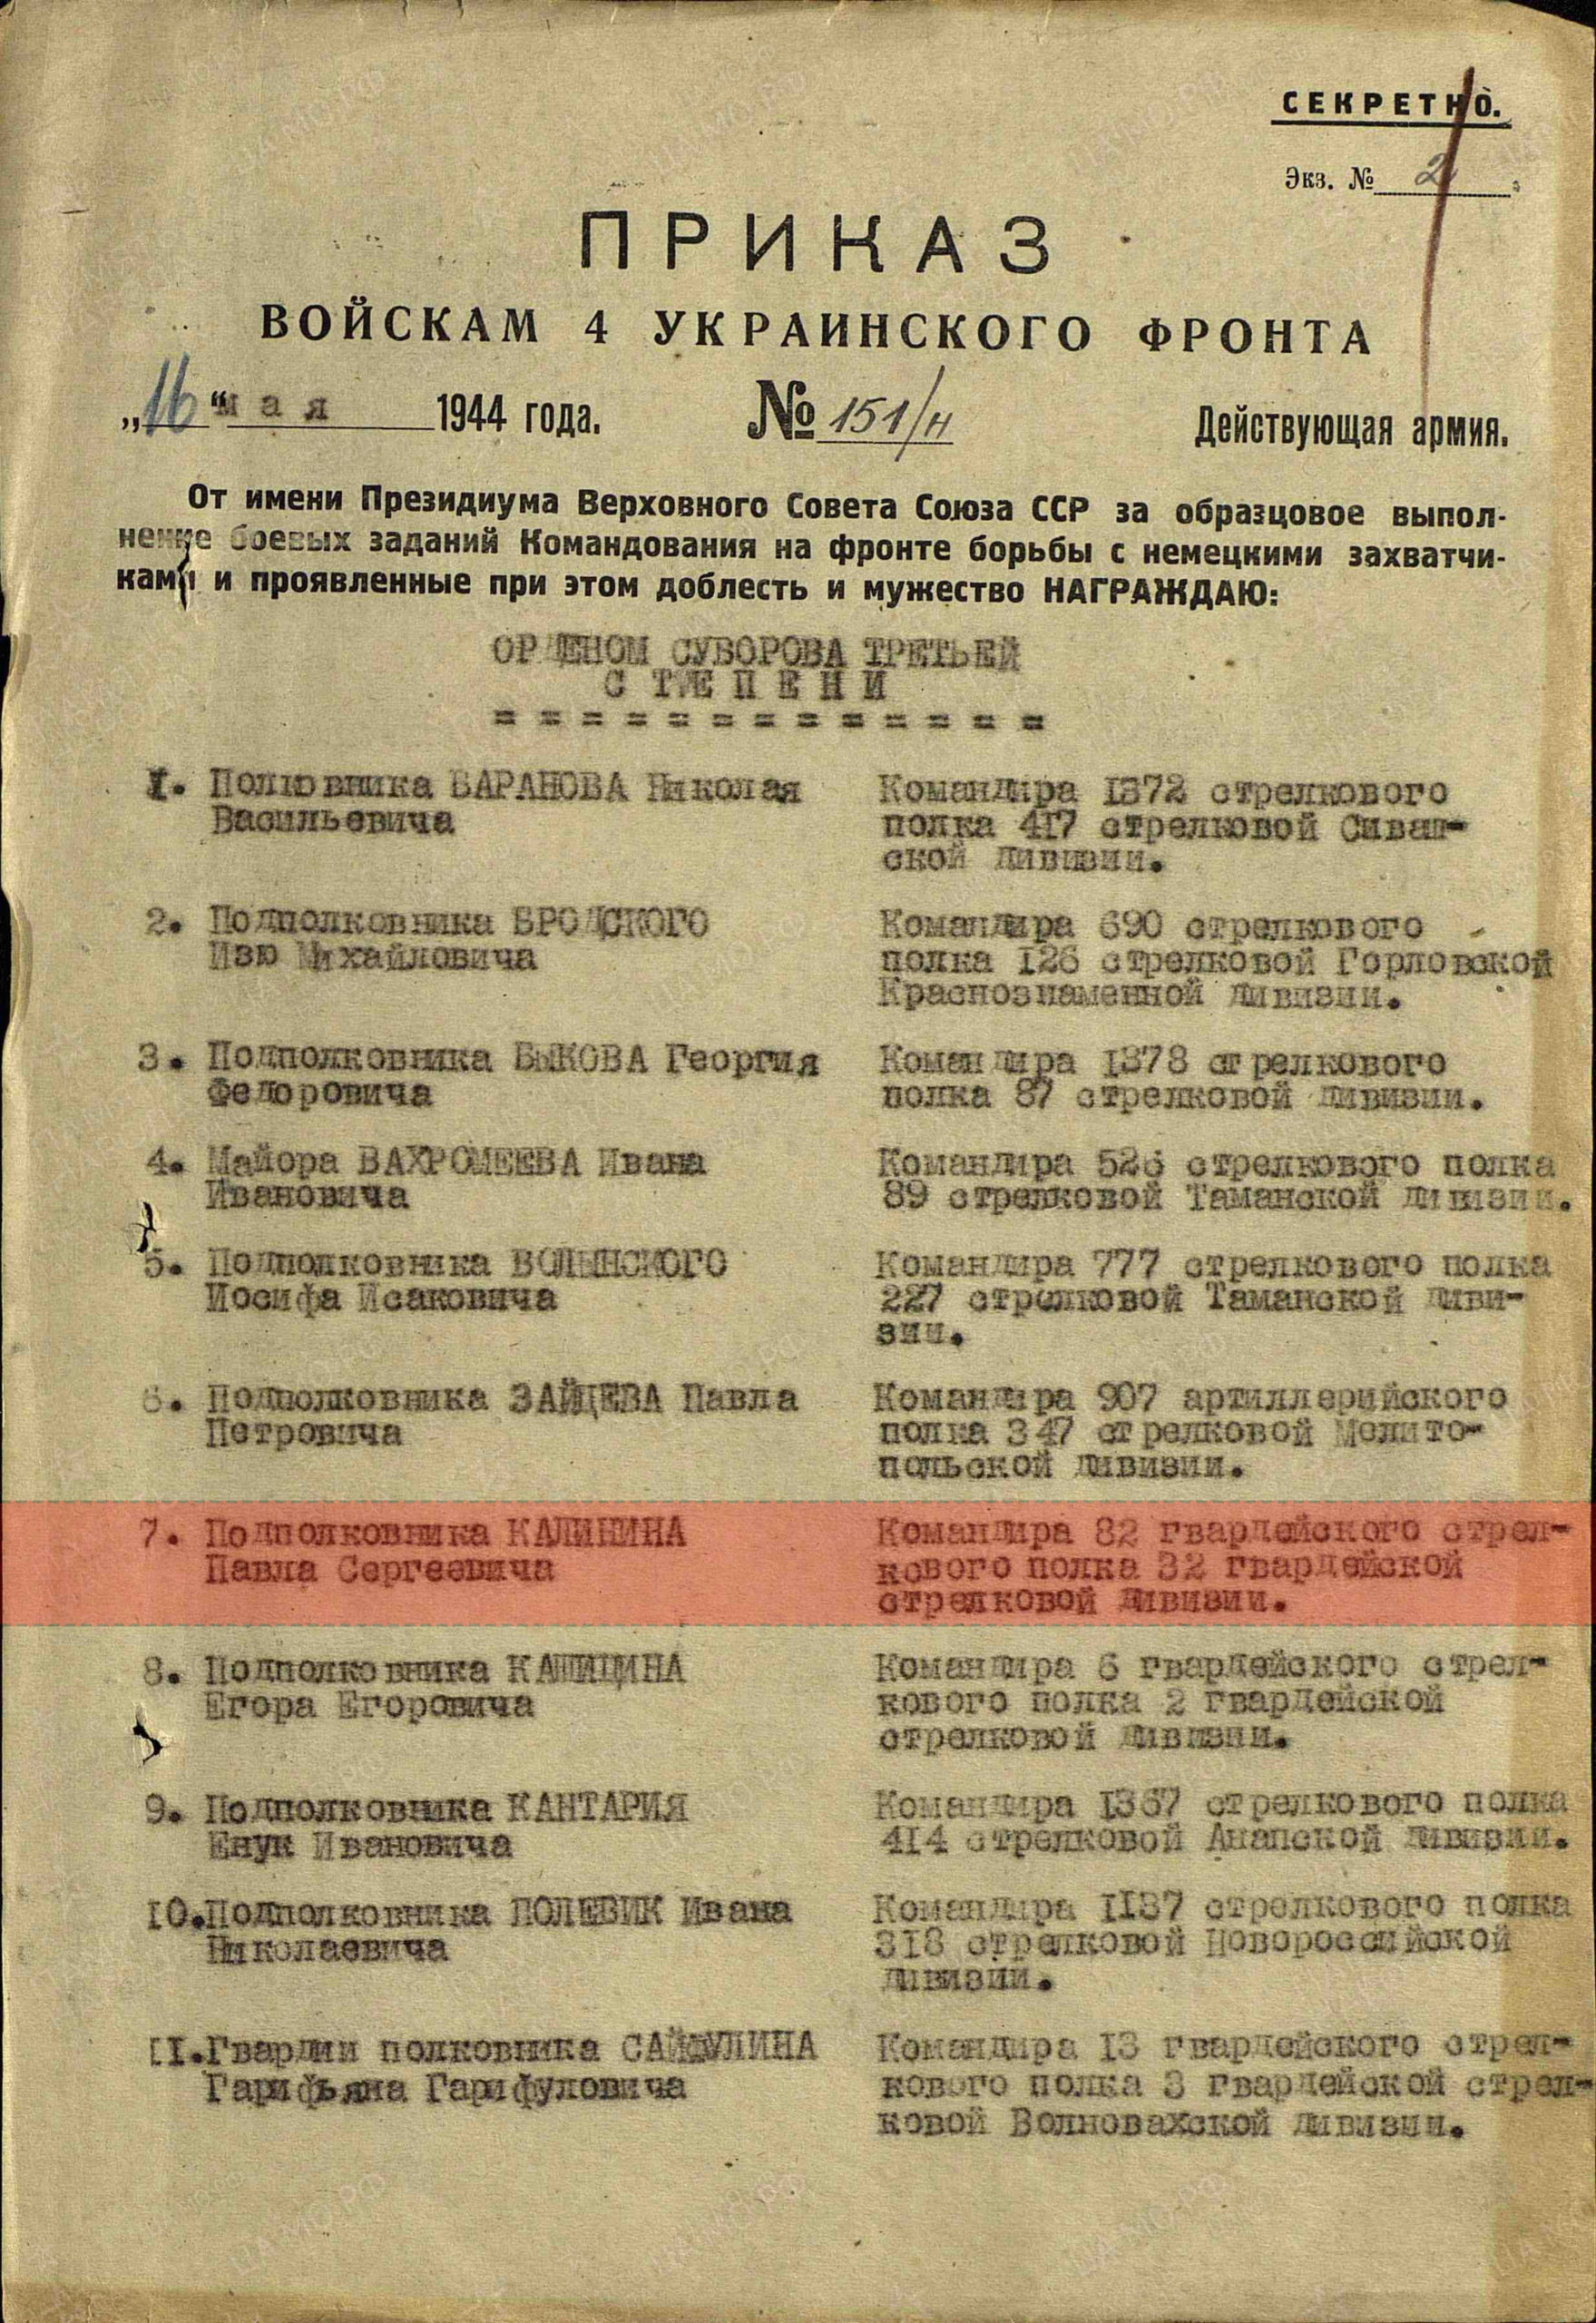 Лист приказа о награждении (строка в наградном списке). Орден Суворова III степени